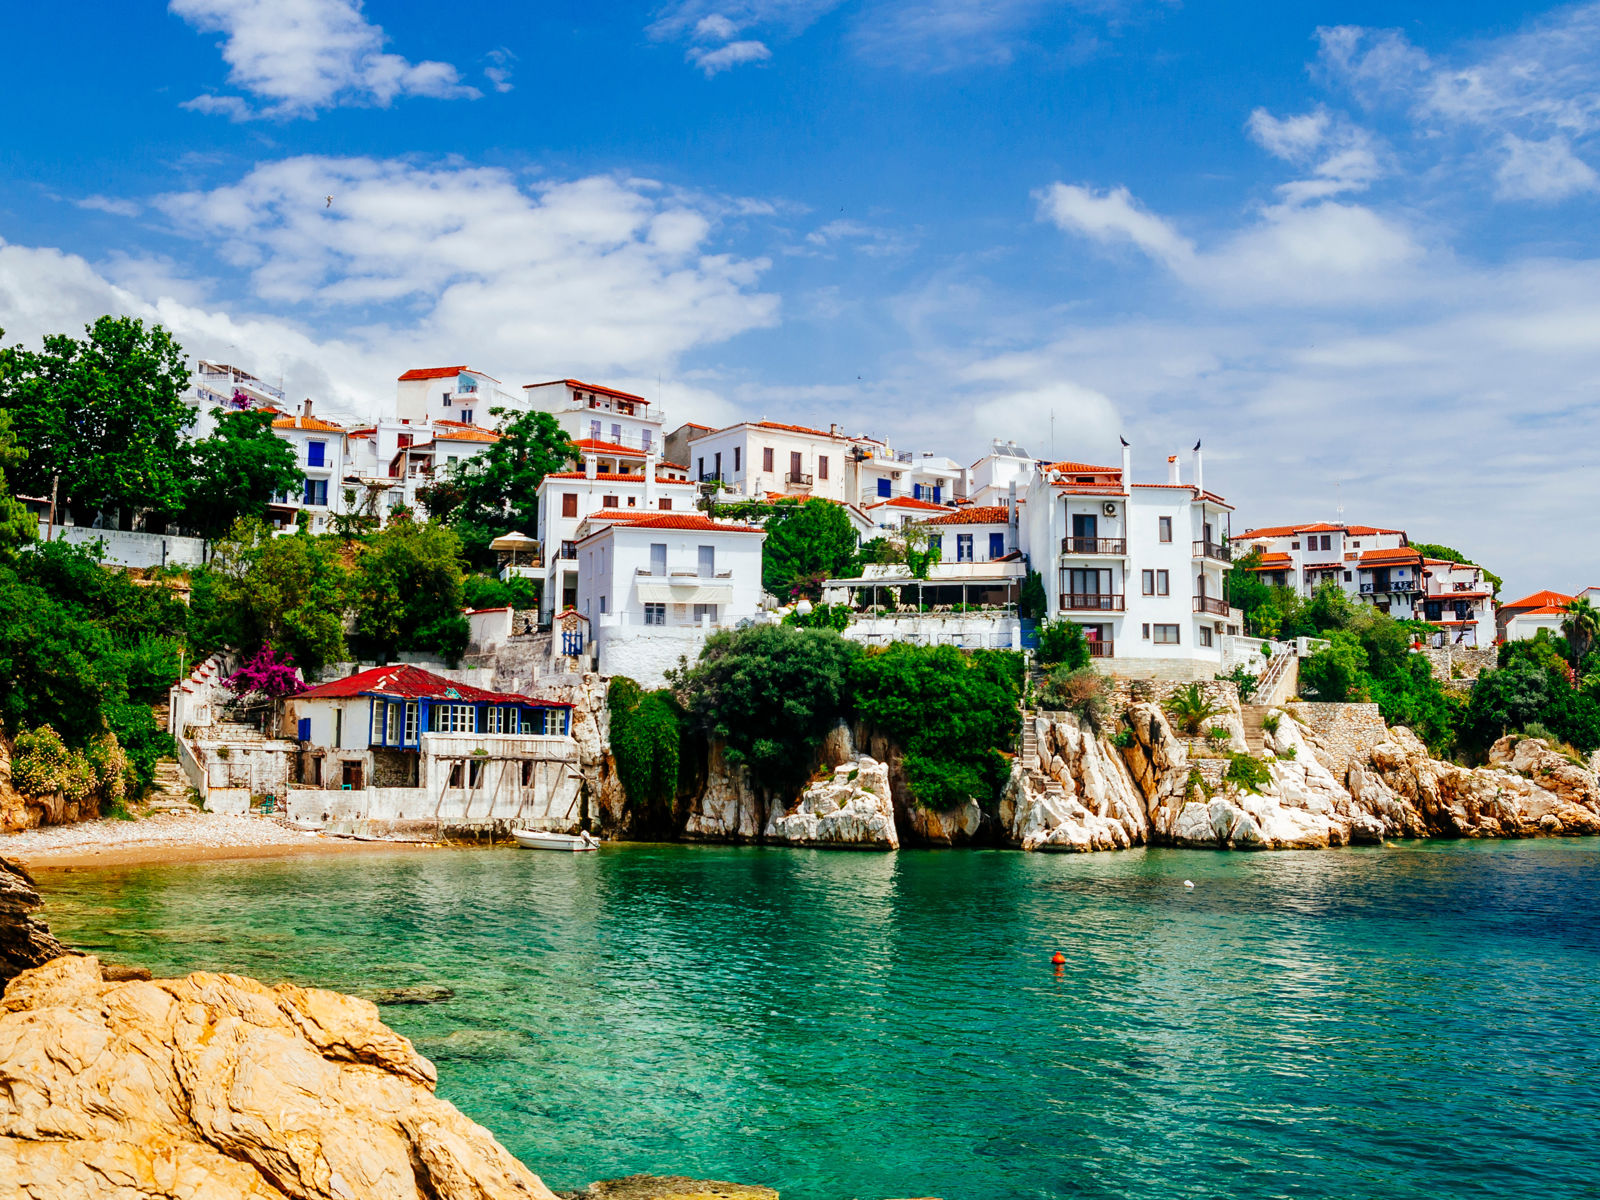 Resa till Skiathos - kuststad med pittoreska vitmålade hus vid klart turkosblått vatten, kantad av gröna träd och klippor under en blå himmel med lätta moln.